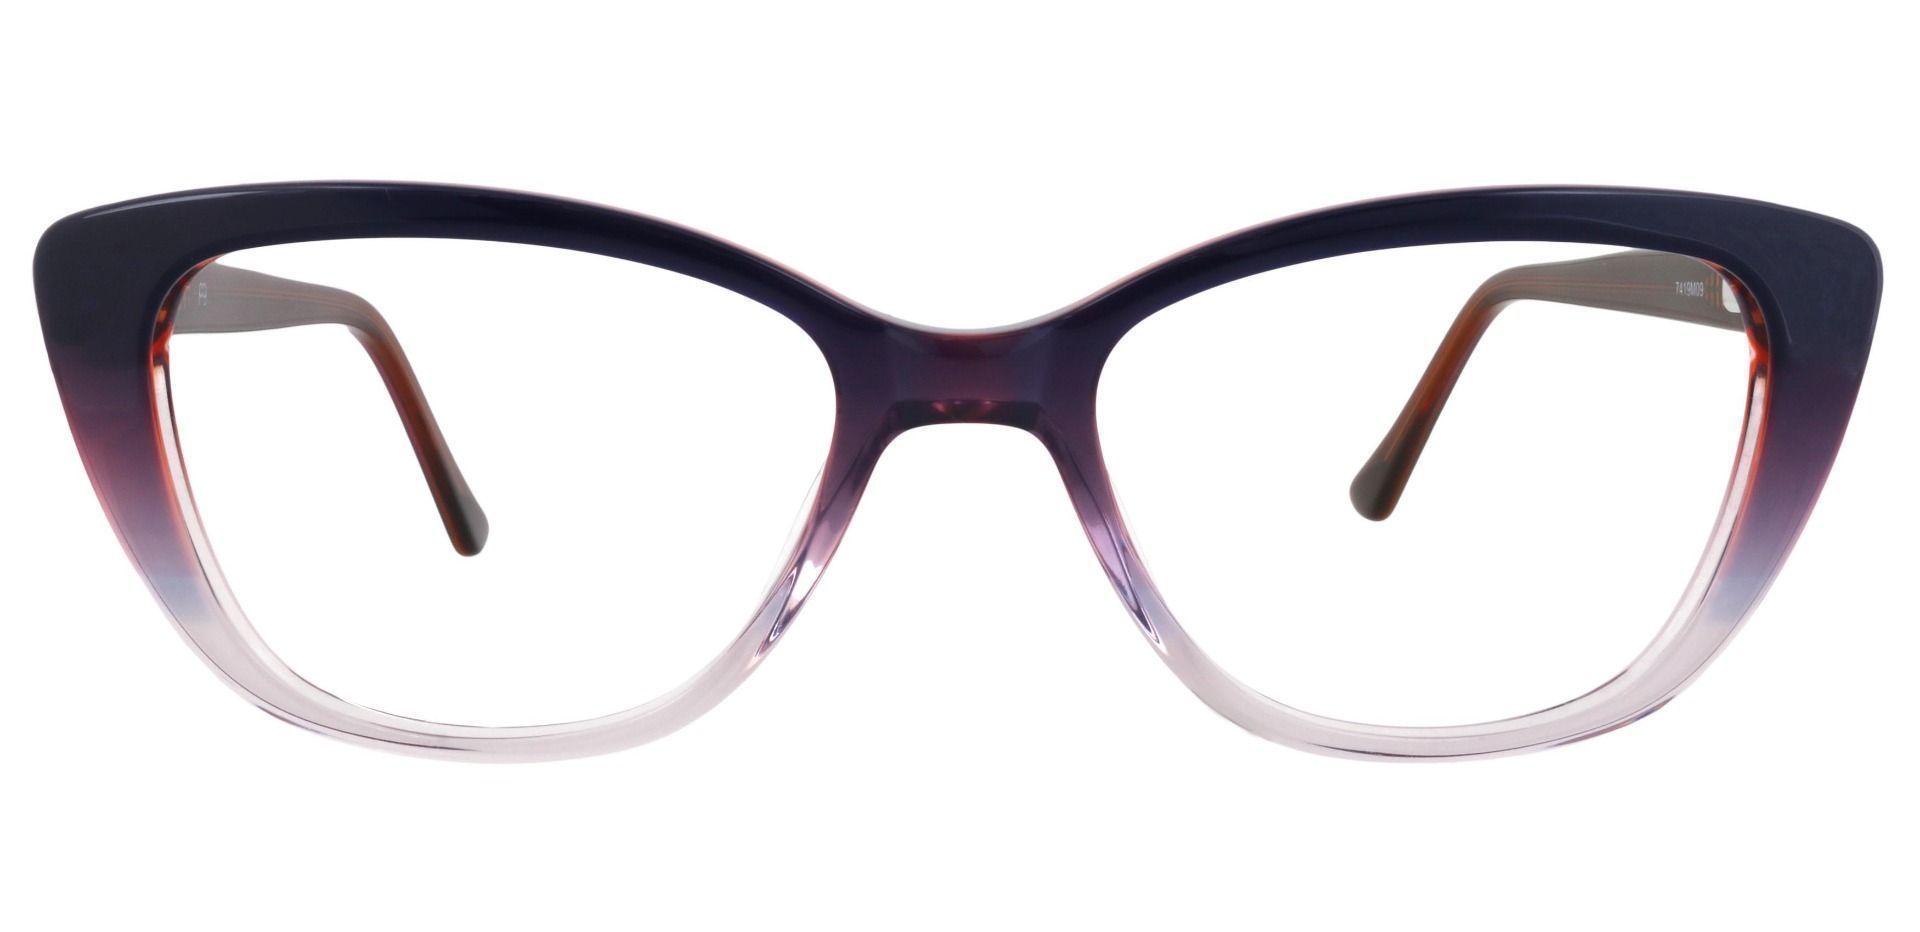 Athena Cat-Eye Non-Rx Glasses - Multi Color